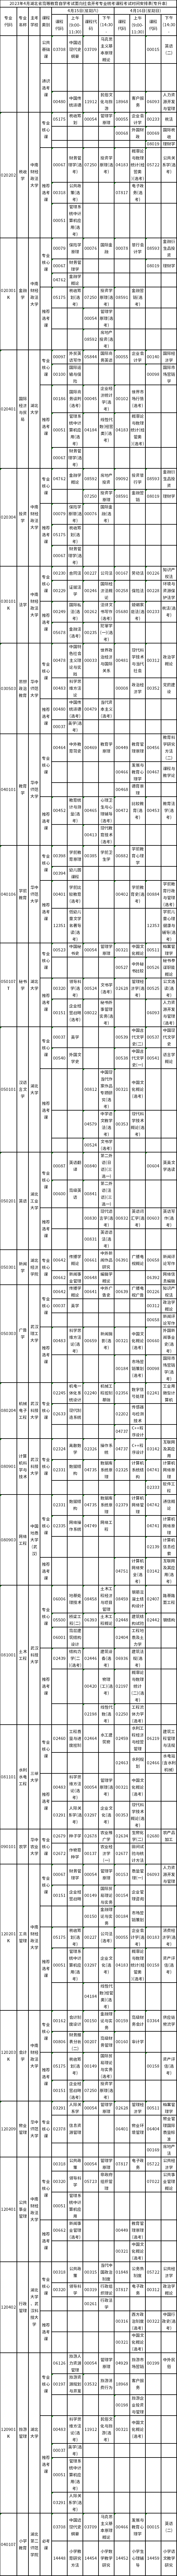 湖北省2023年4月自学考试面向社会开考专业统考课程考试安排表